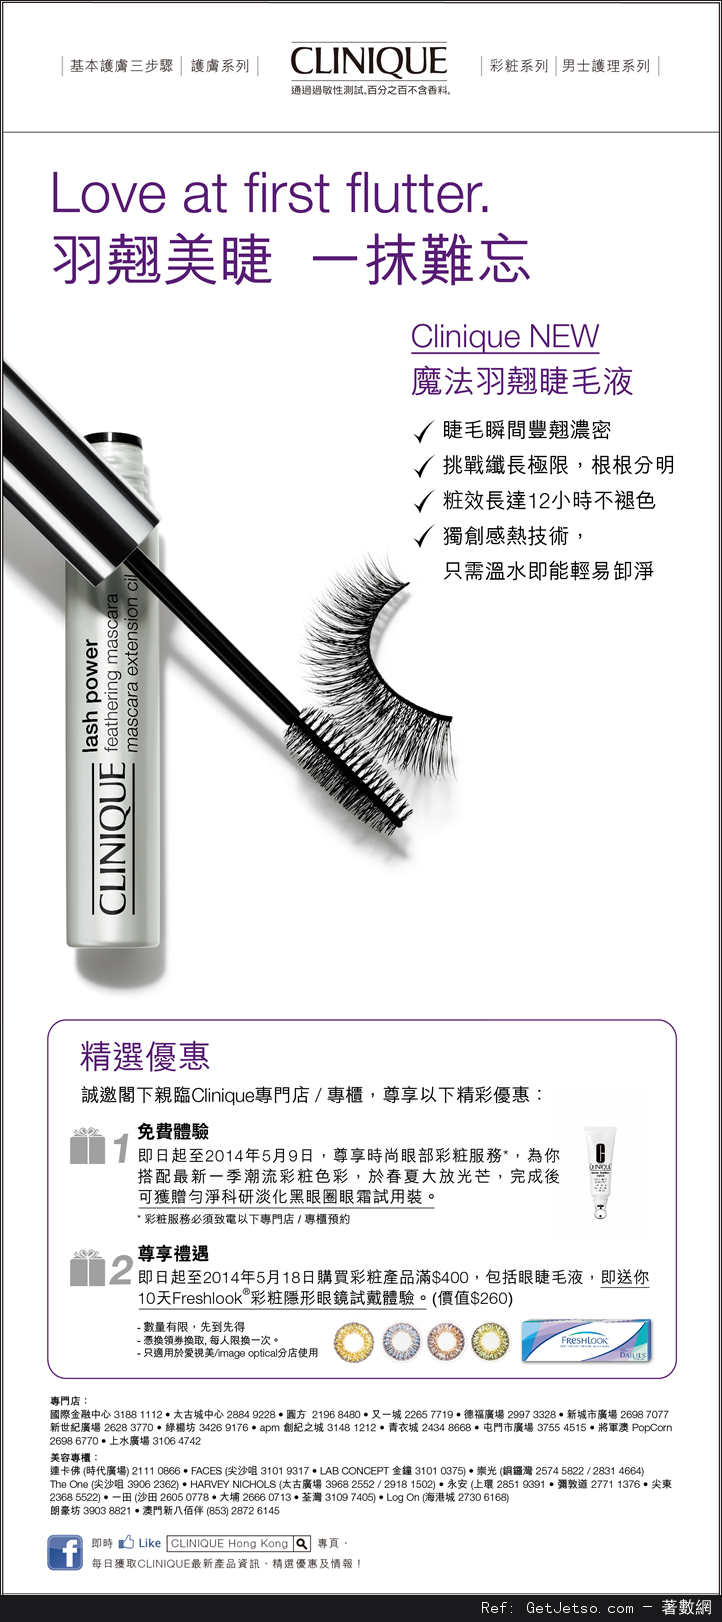 CLINIQUE 免費試用裝及彩妝產品購買優惠(至14年5月8日)圖片1